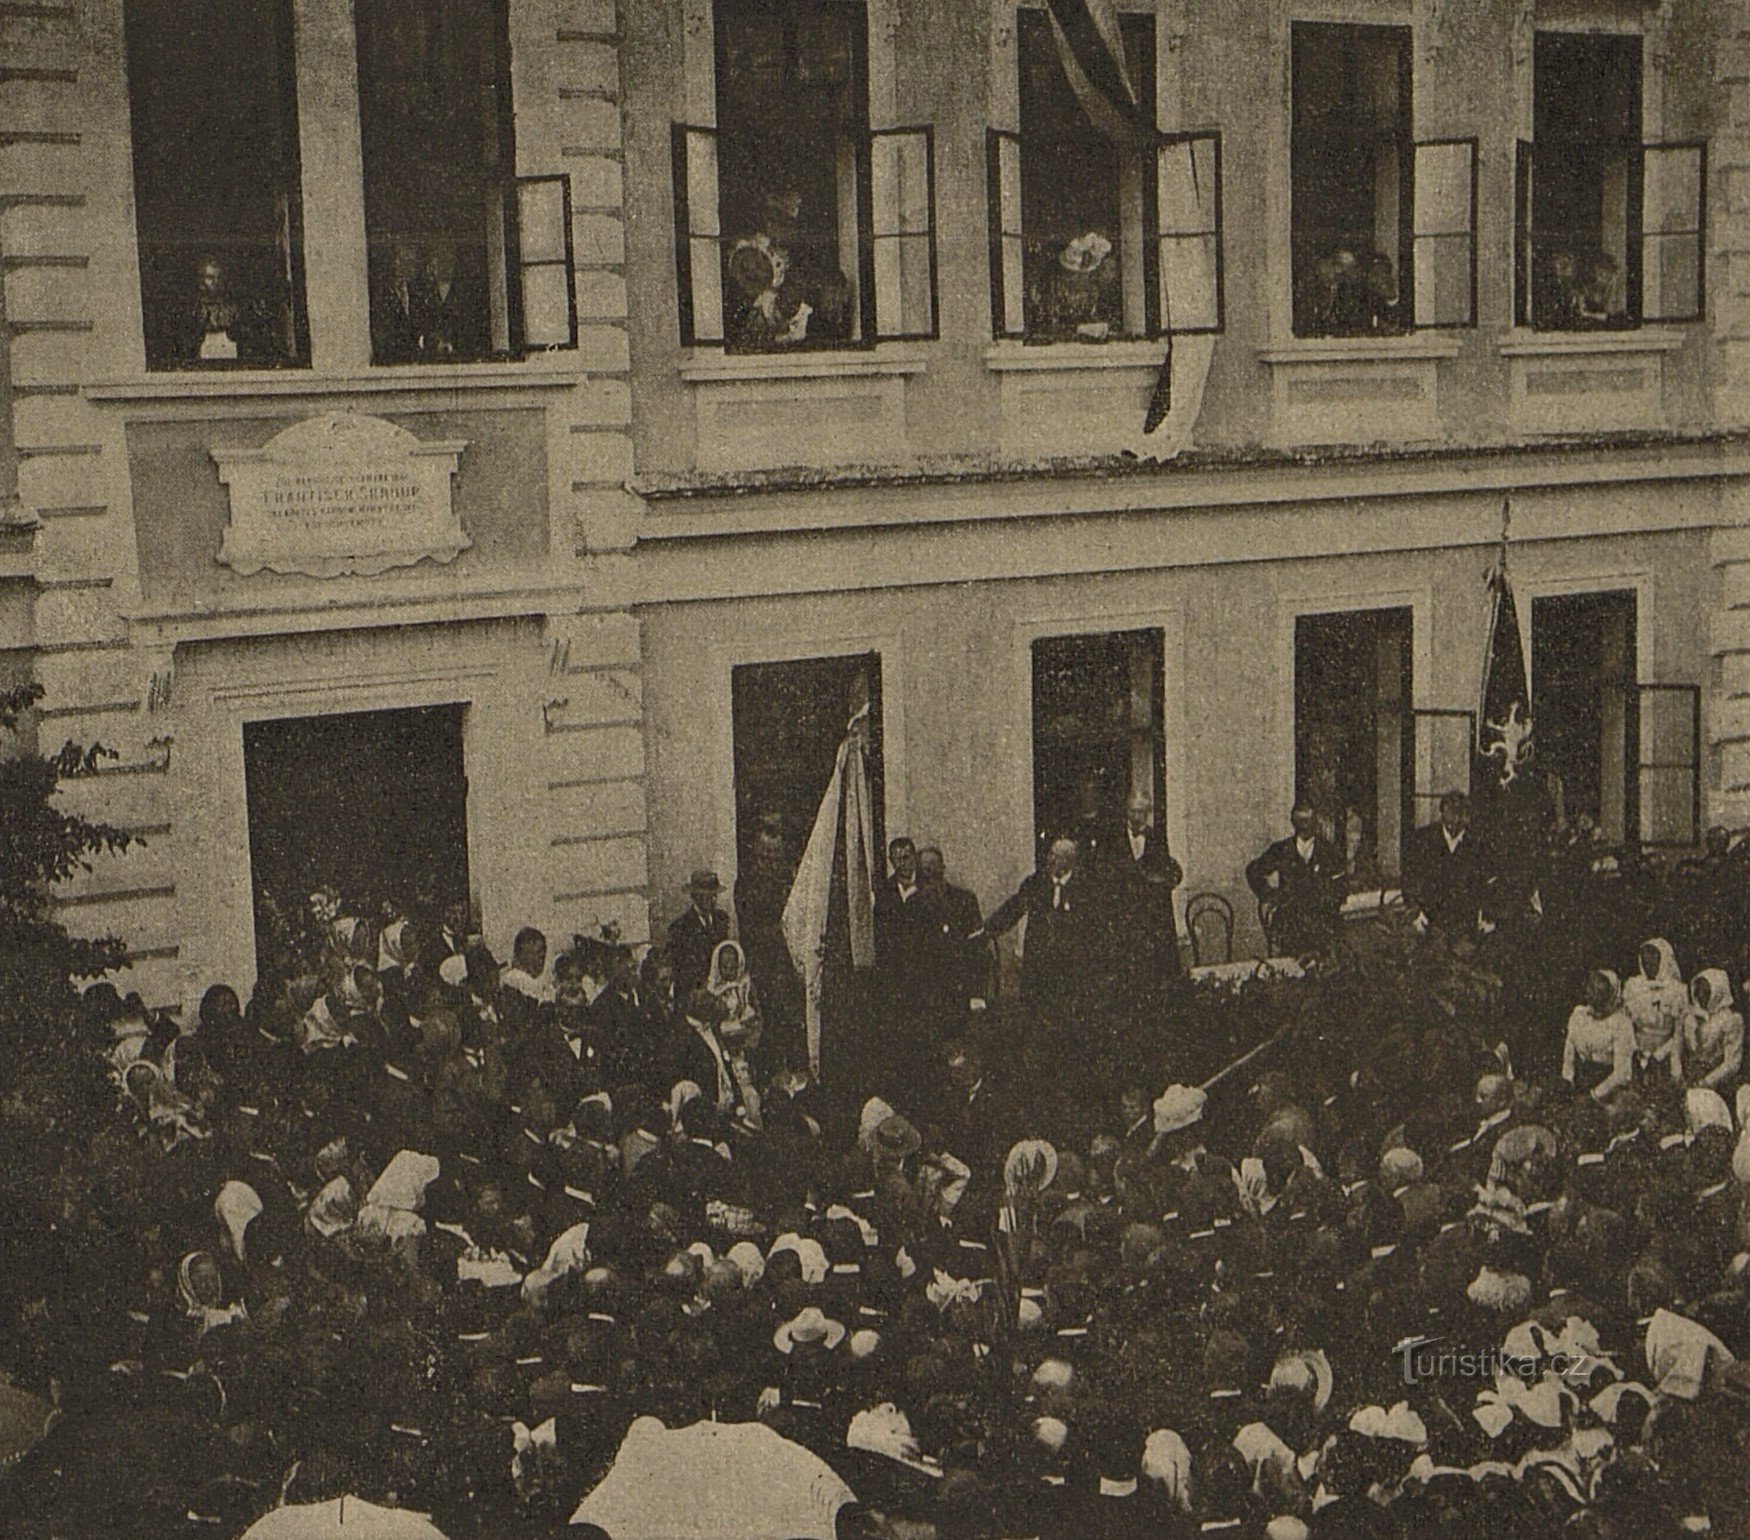 Inauguración ceremonial de la placa conmemorativa de František Škroup en Osice en 1901